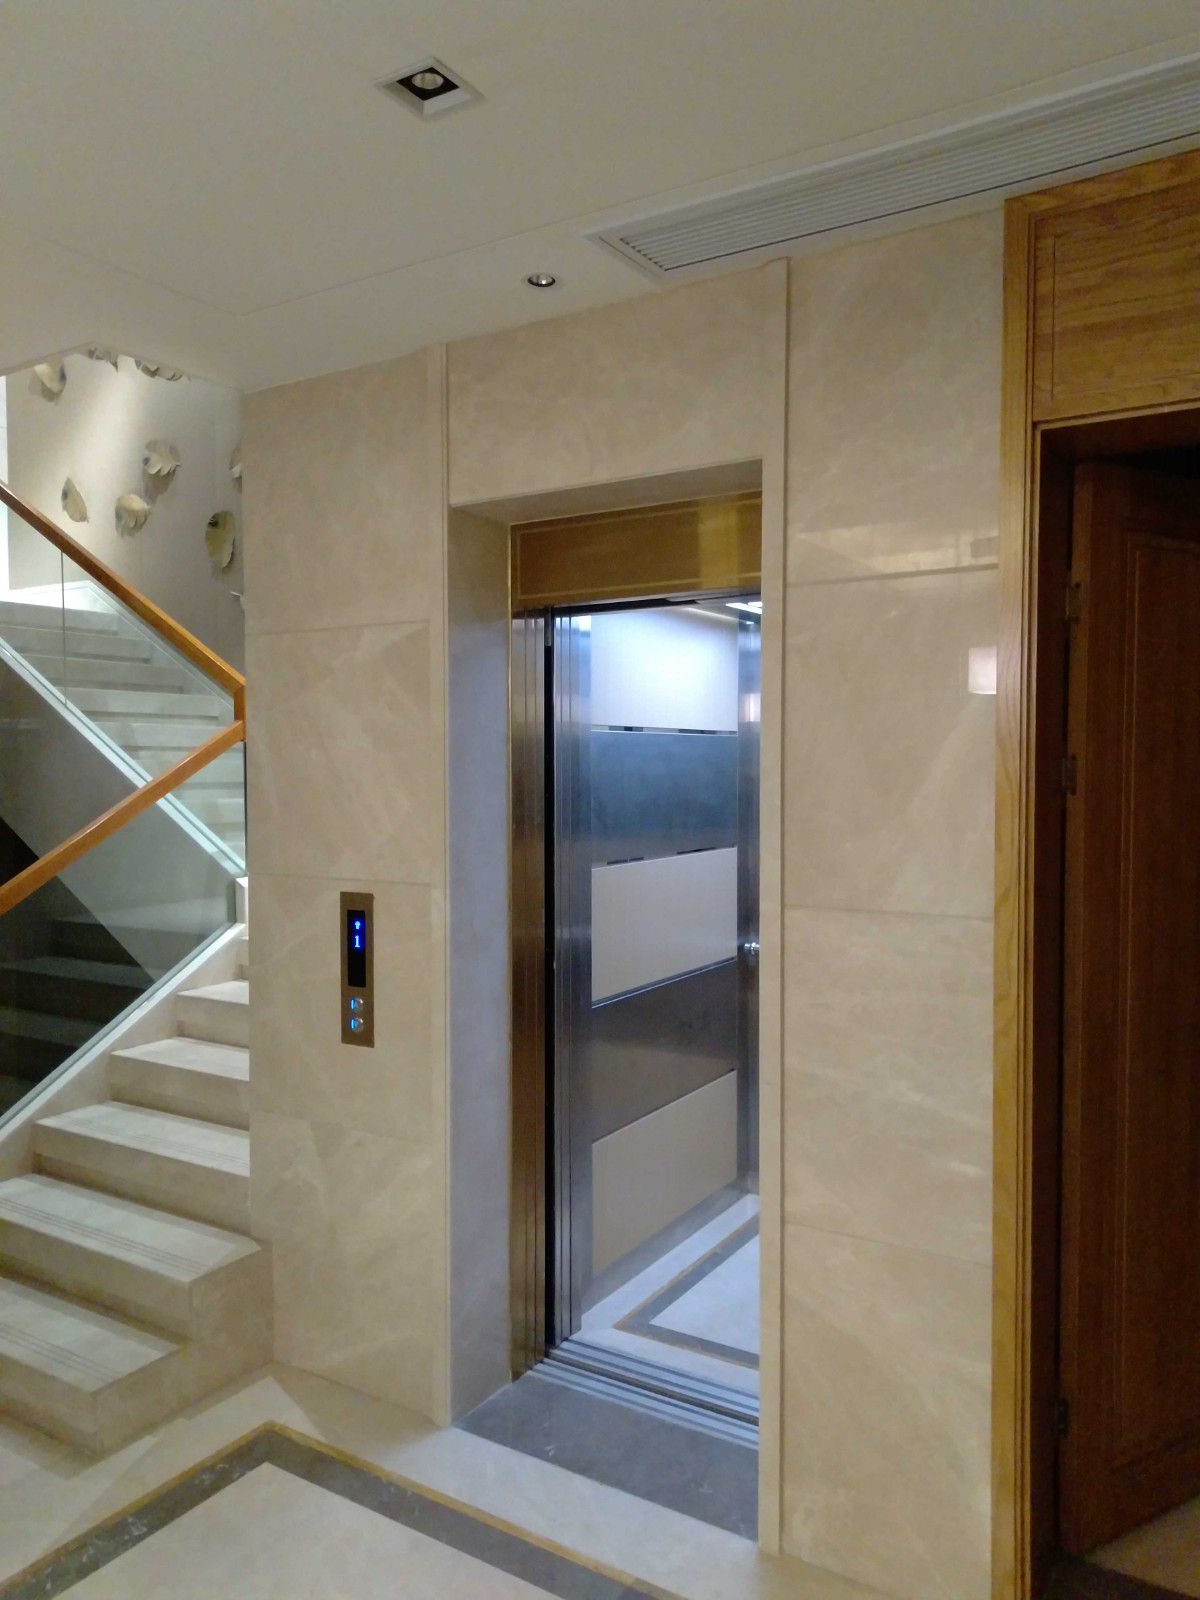 베 어 스 코 비 아 바3층 가정용 별장 엘리베이터개발을 위한 변경